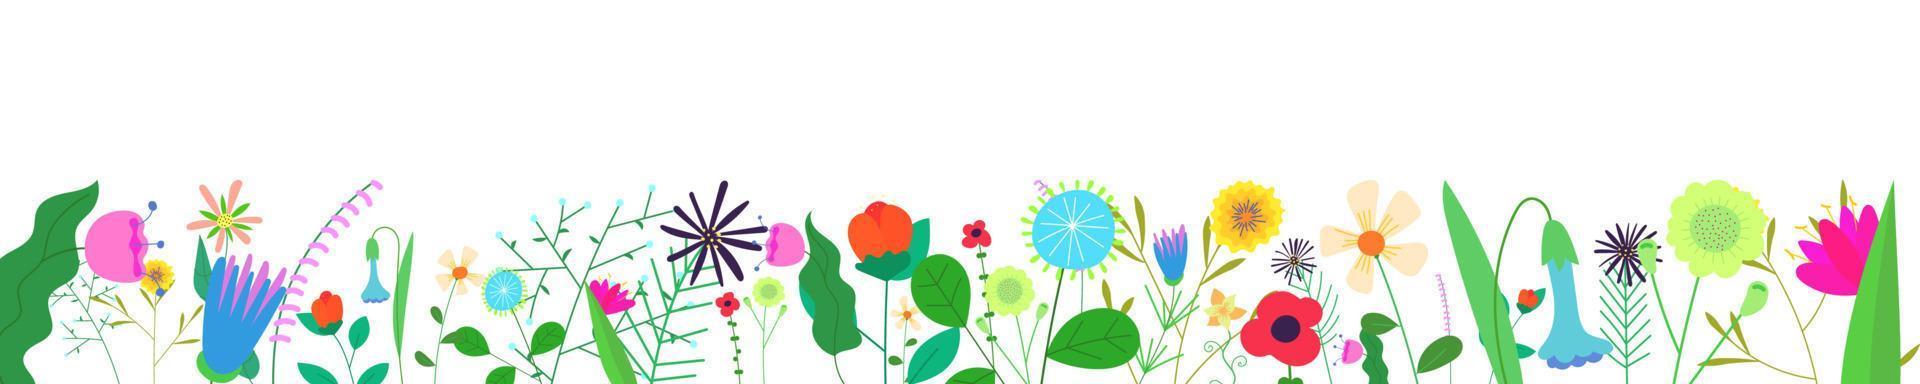 bannière horizontale florale sur fond blanc. bordure de fleurs sauvages printanières. décoration de plantes à base de plantes. champ d'été délicat et fleurs sauvages des prés. fleurs abstraites eps botaniques sur le bas du cadre vecteur